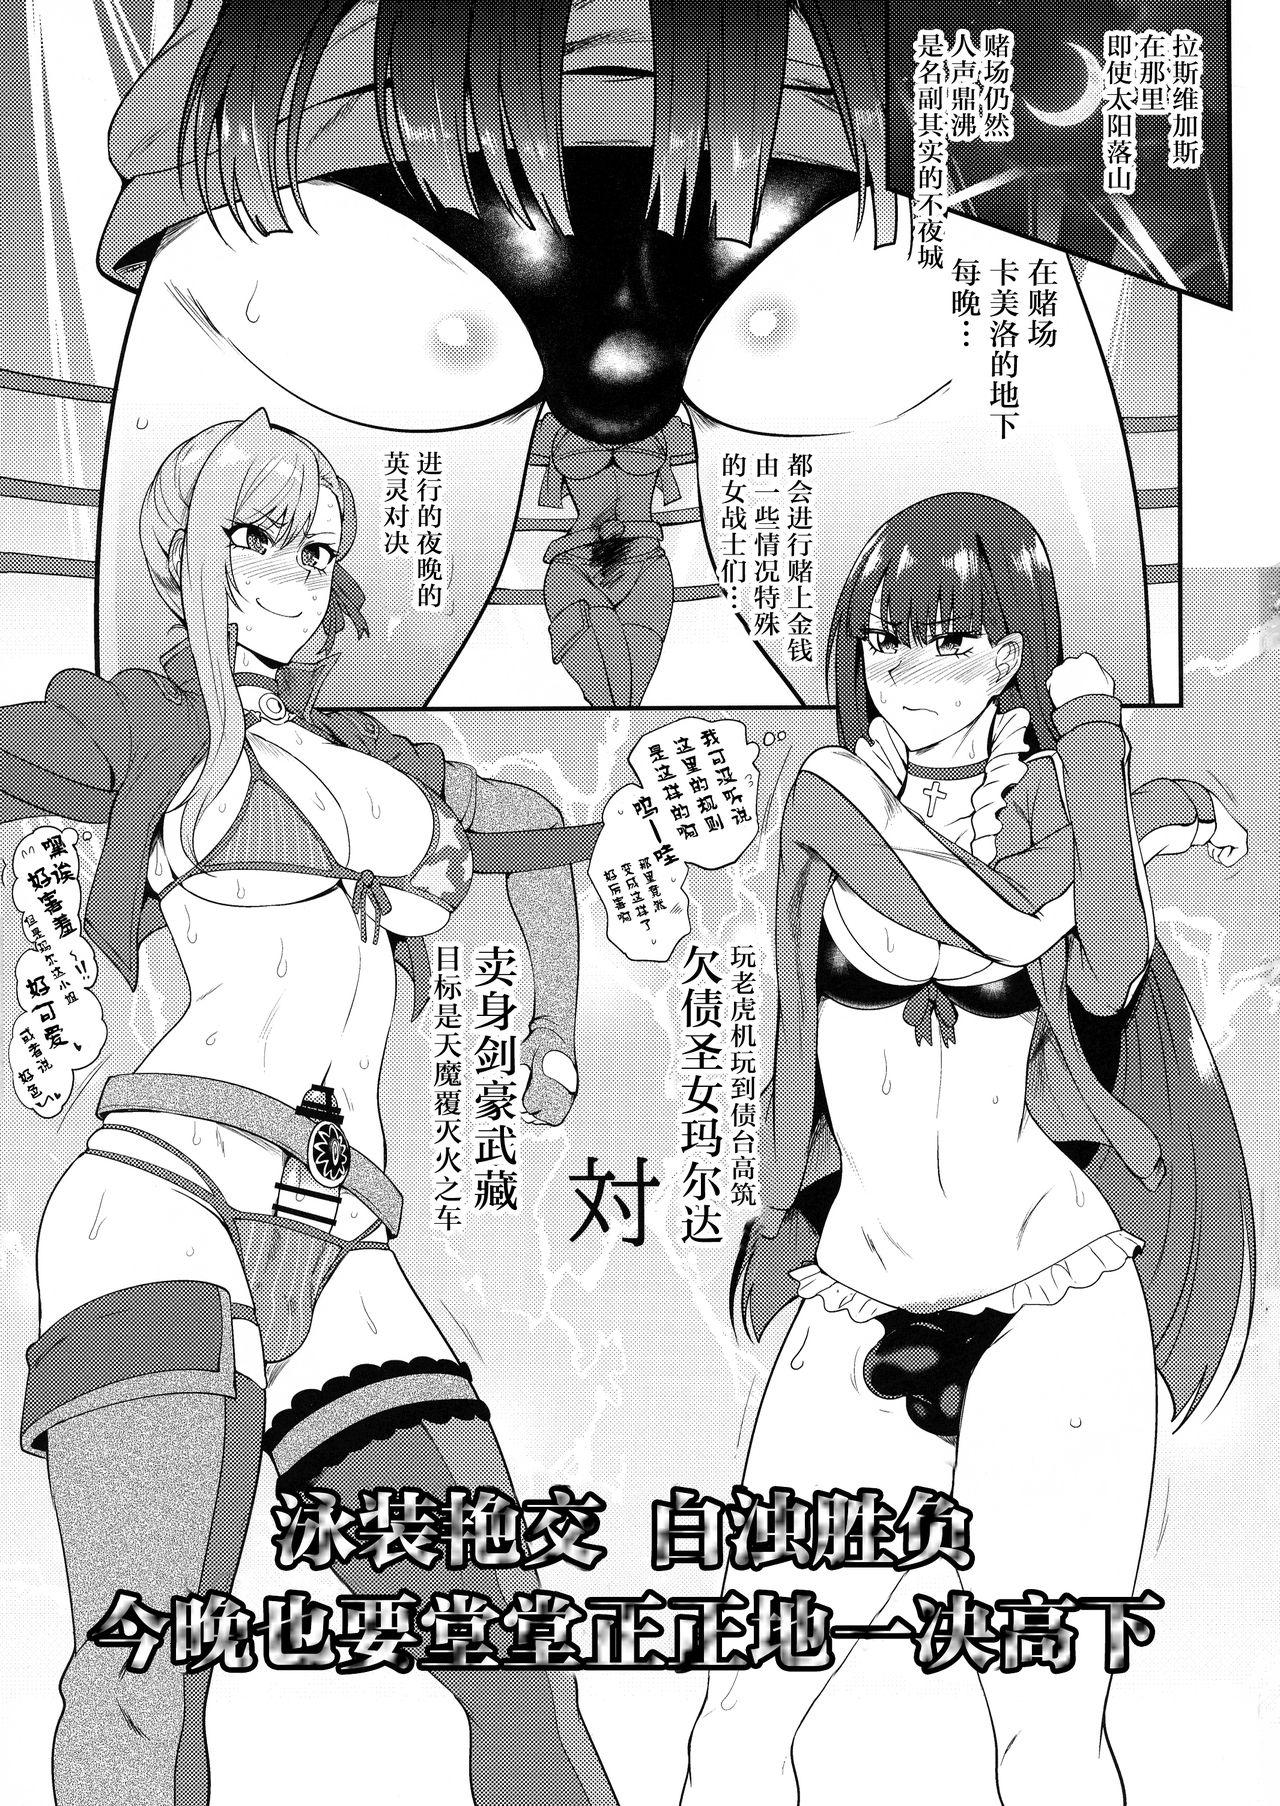 Travesti Las Vegas Souseiki/Sou Seiki - Fate grand order Furry - Page 3